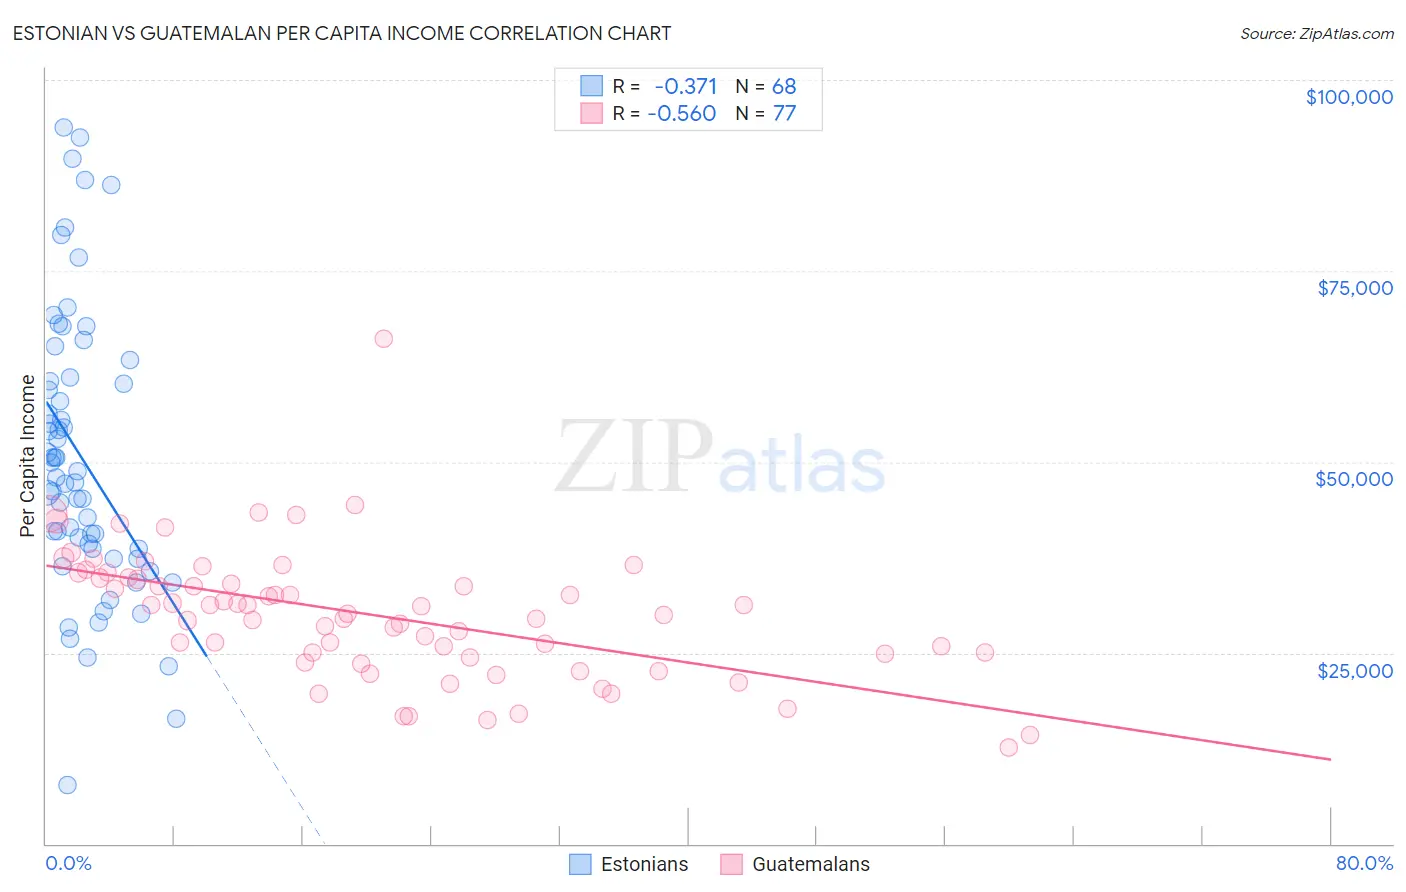 Estonian vs Guatemalan Per Capita Income